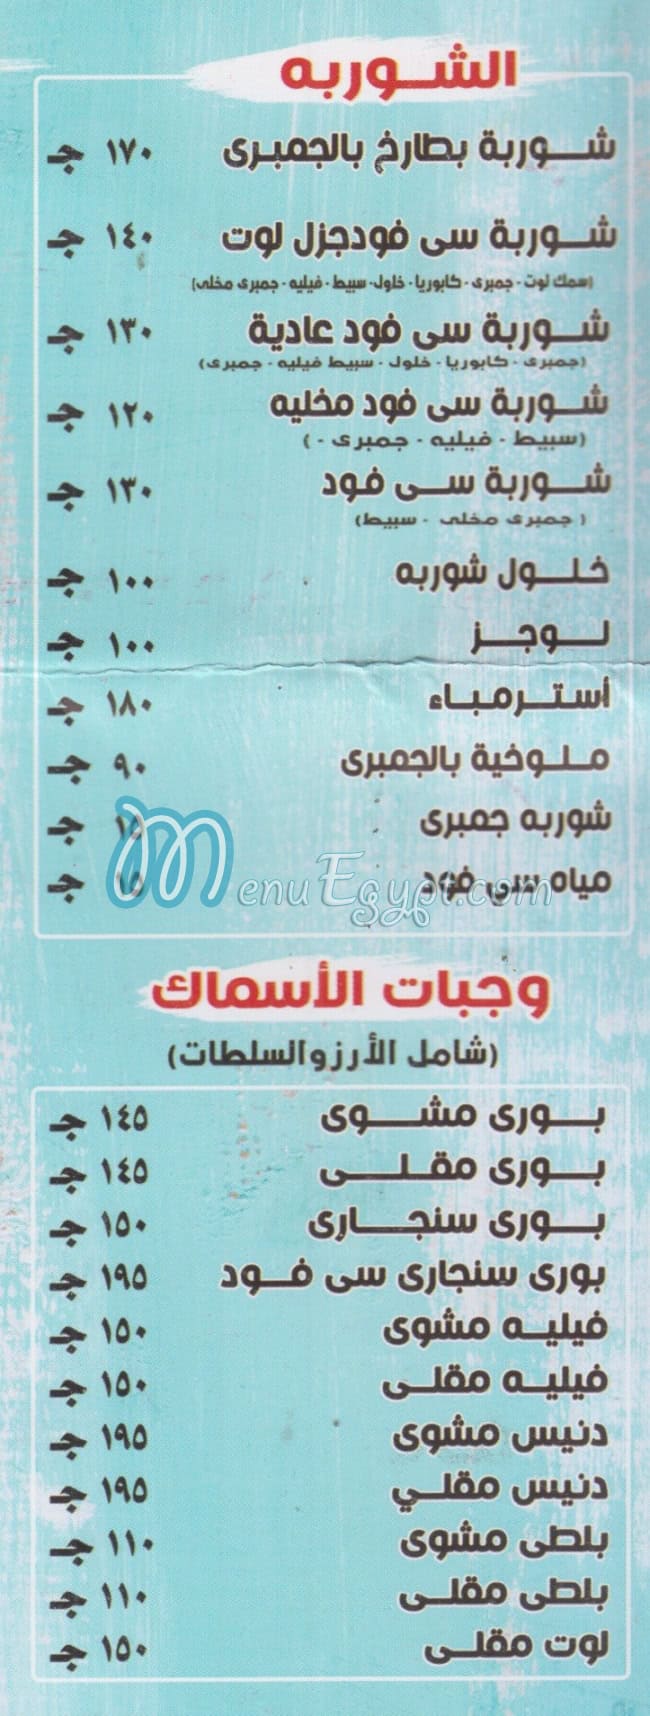 Asmak El Salah 3ala Elnaby menu